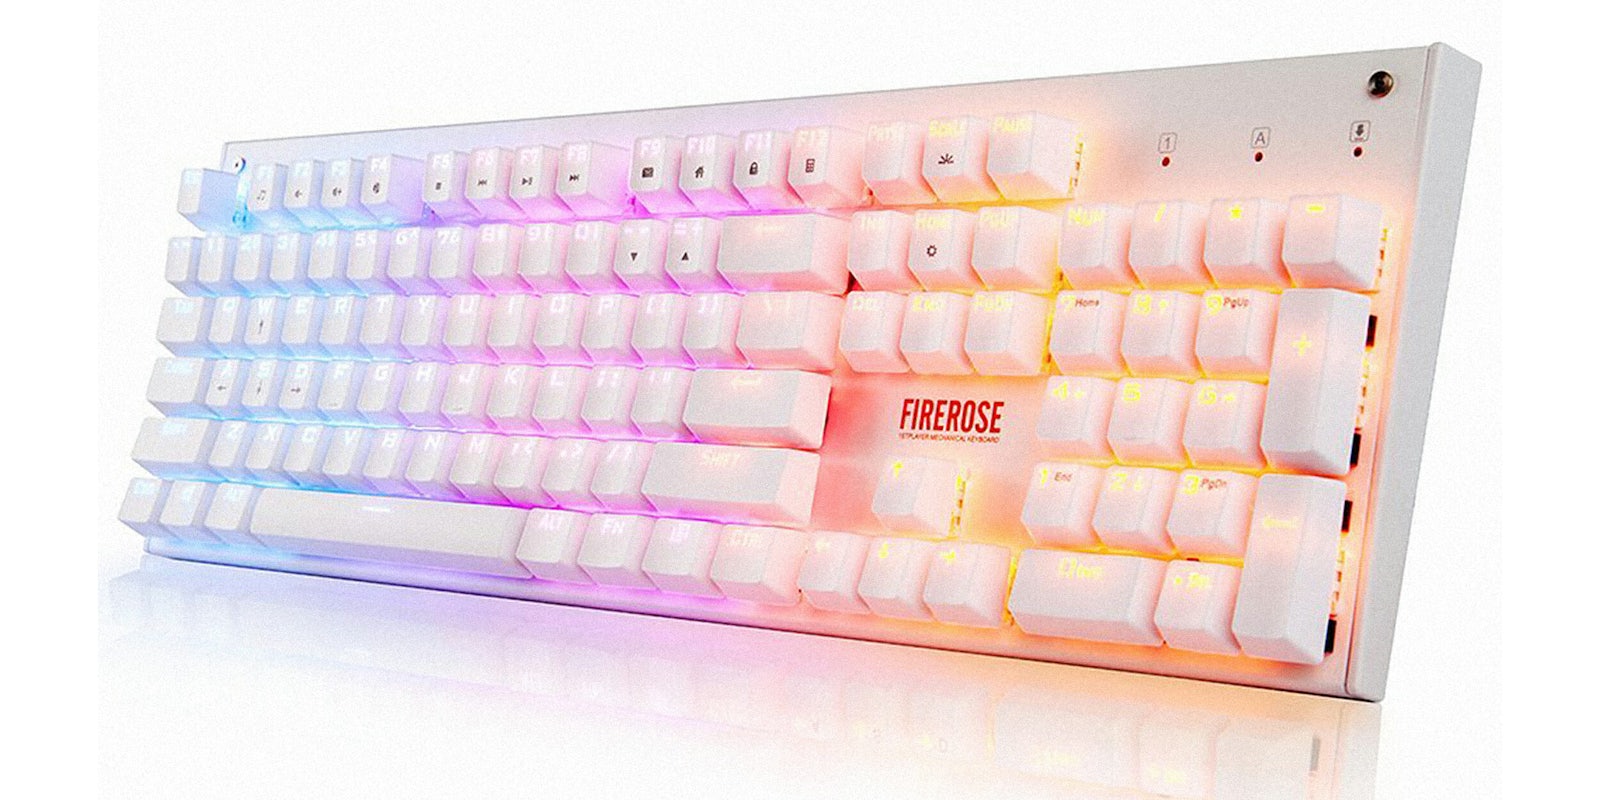 Firerose glowing keyboard